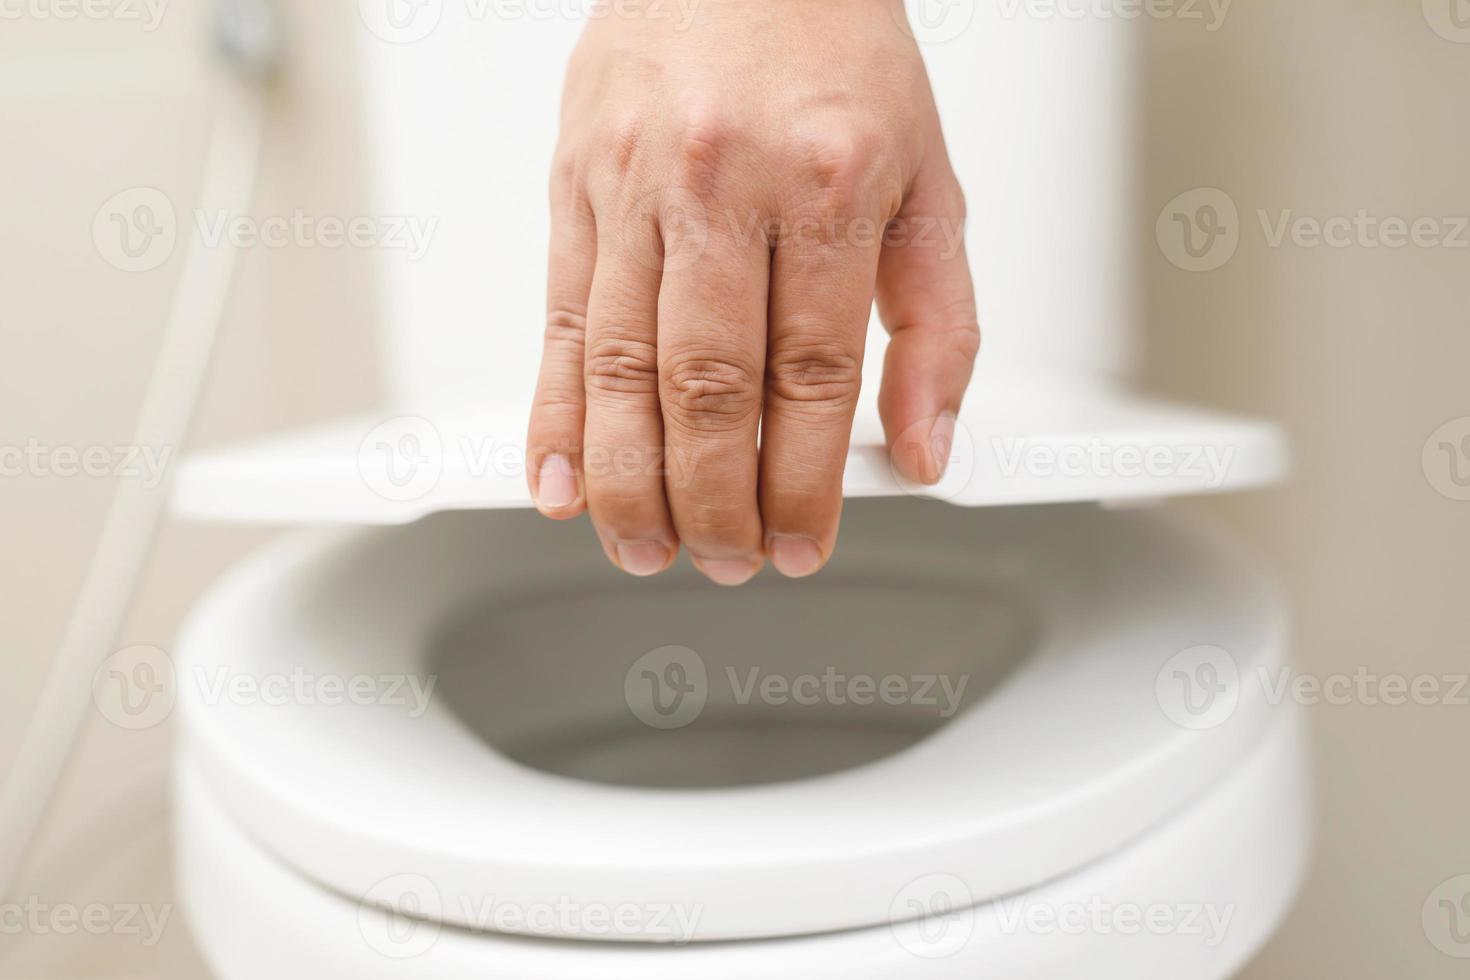 proche en haut main de une femme fermeture le couvercle de une toilette siège. hygiène et santé se soucier concept. photo